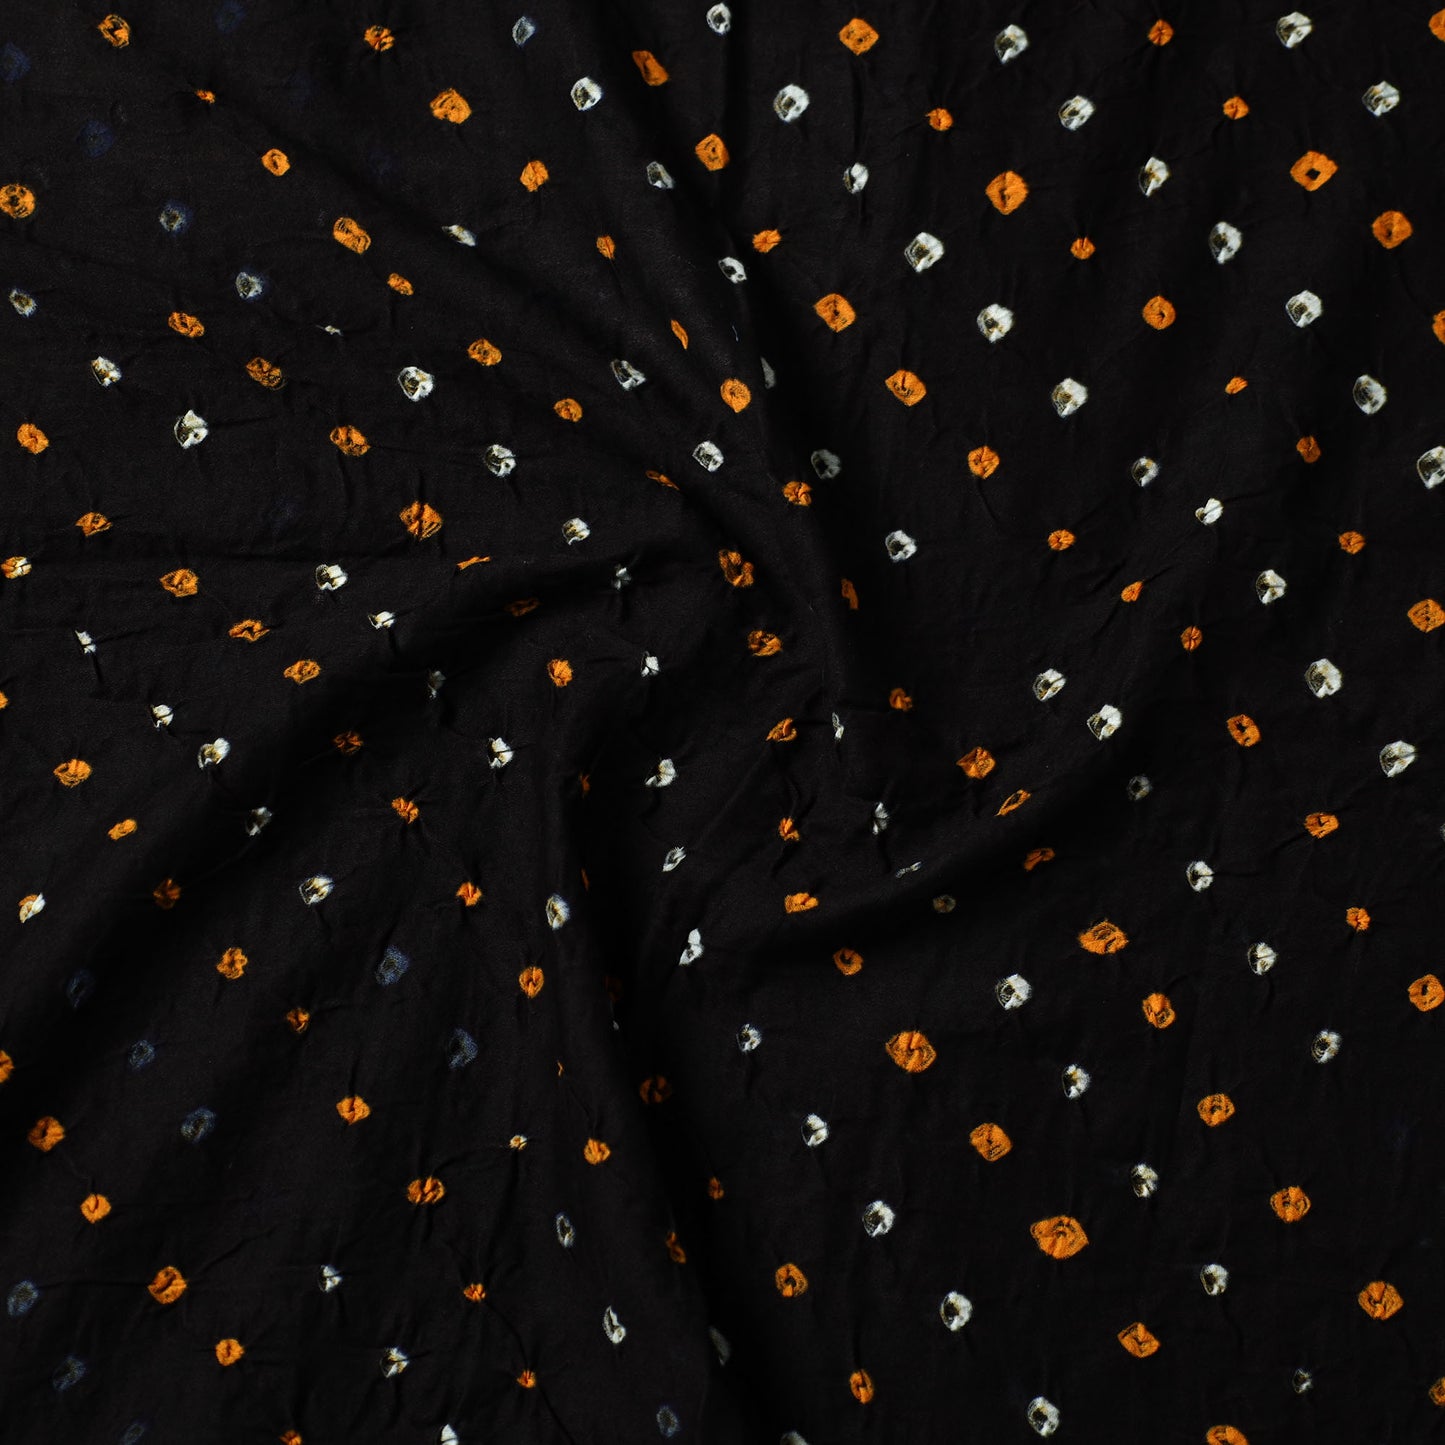 Black - Kutch Bandhani Tie-Dye Cotton Precut Fabric 50